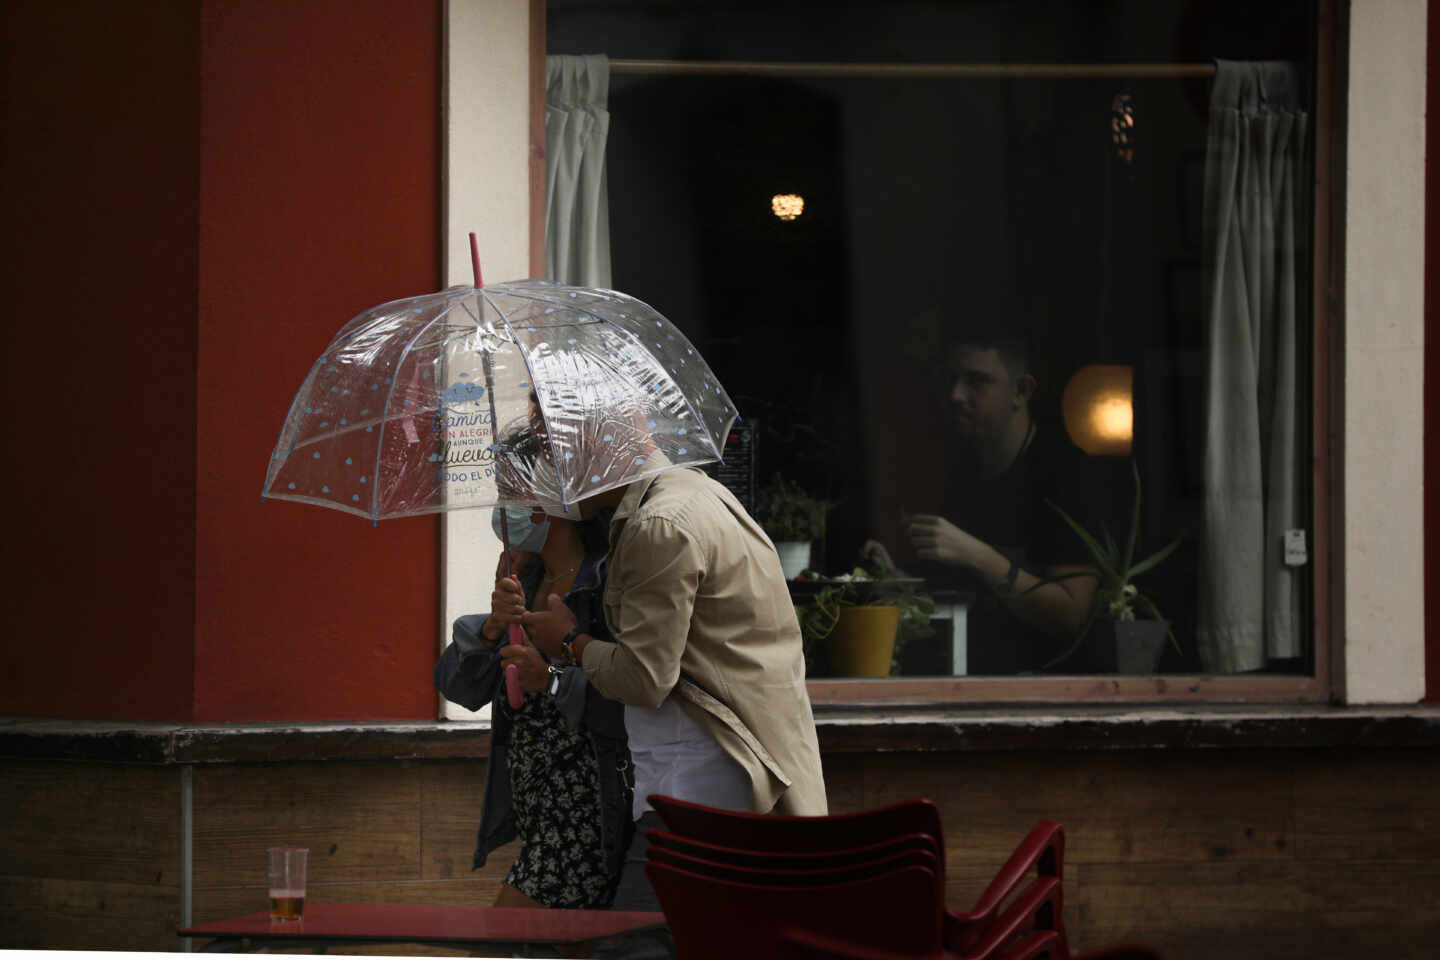 Dos personas pasan por delante de una terraza de un bar protegidos bajo un paraguas.